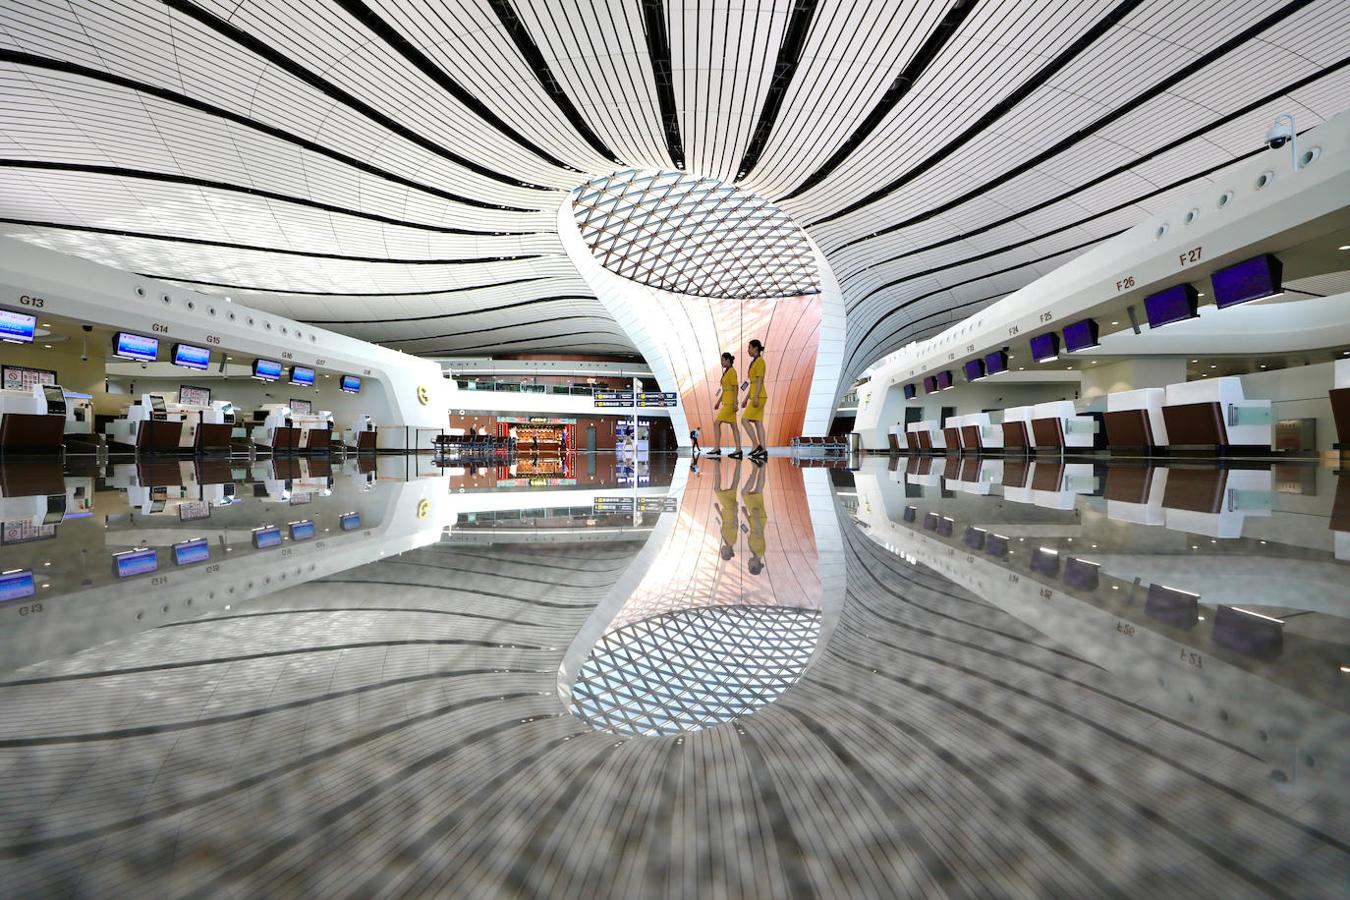 El aeropuerto internacional de Beijing Daxing, el mayor del mundo. Tiene siete pistas y una terminal en forma de estrella que ocupa casi cien campos de fútbol